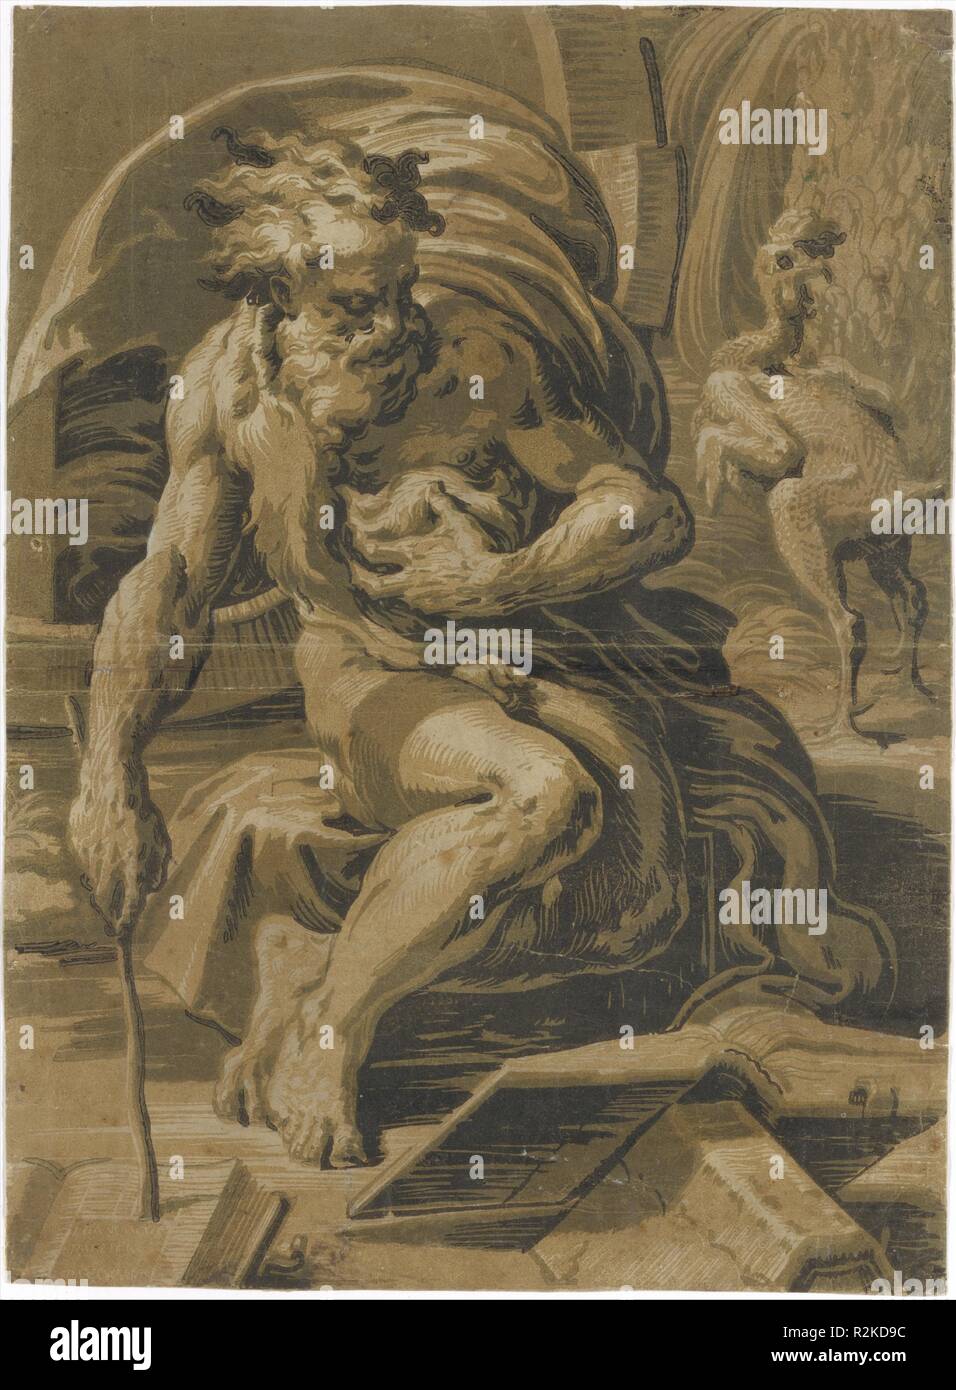 Diogene, seduto davanti la sua canna, la lettura di un libro, una gallina pizzicata dietro di lui a destra. Artista: Dopo Parmigianino (Girolamo Francesco Maria Mazzola) (italiano, Parma 1503-1540 Casalmaggiore); Ugo da Carpi (italiano, Carpi ca. 1480-1532 Bologna). Dimensioni: Immagine: 18 11/16 x 13 5/8 in. (47,5 x 34,6 cm) Montaggio: 28 x 22 in. (71,1 x 55,9 cm). Data: 1520-30. Ugo da Carpi è stato il primo artista italiano a sperimentare una xilografia multiblocco tecnica nota come chiaroscuro. Il metodo richiede un blocco diverso per ogni ombra; i blocchi vengono inchiostrati e stampati uno sopra l'altro per creare Foto Stock